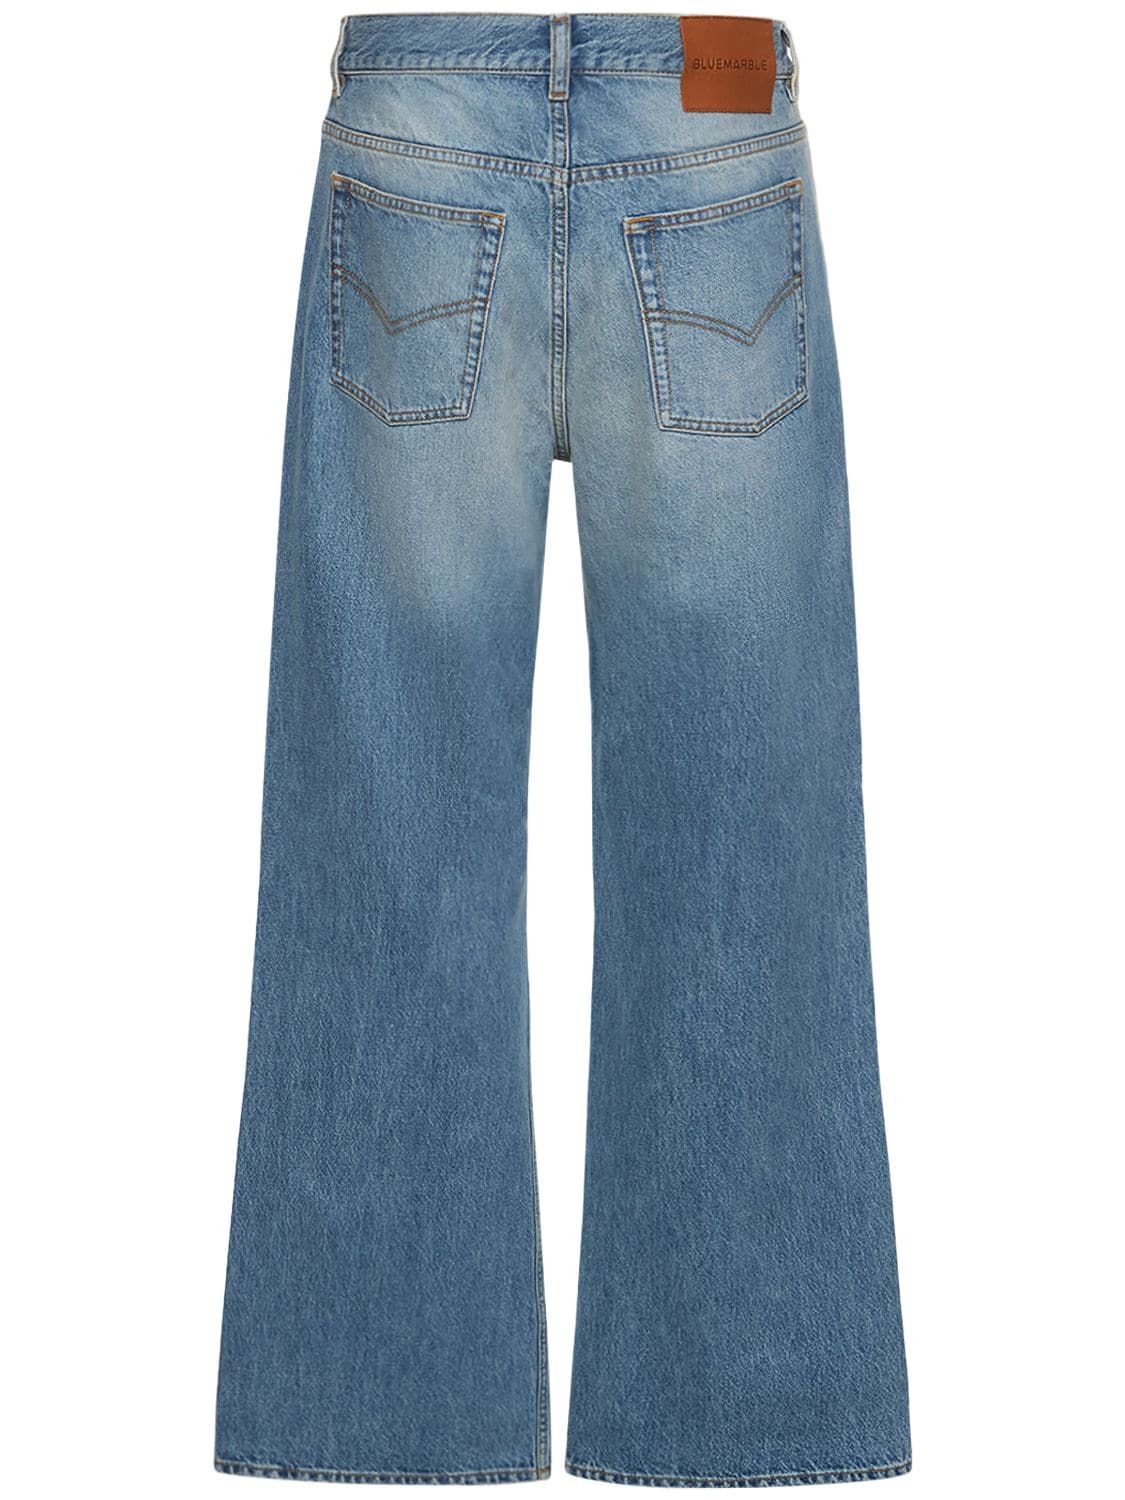 Shop Bluemarble 27cm Bootcut Cotton Denim Jeans In Blue